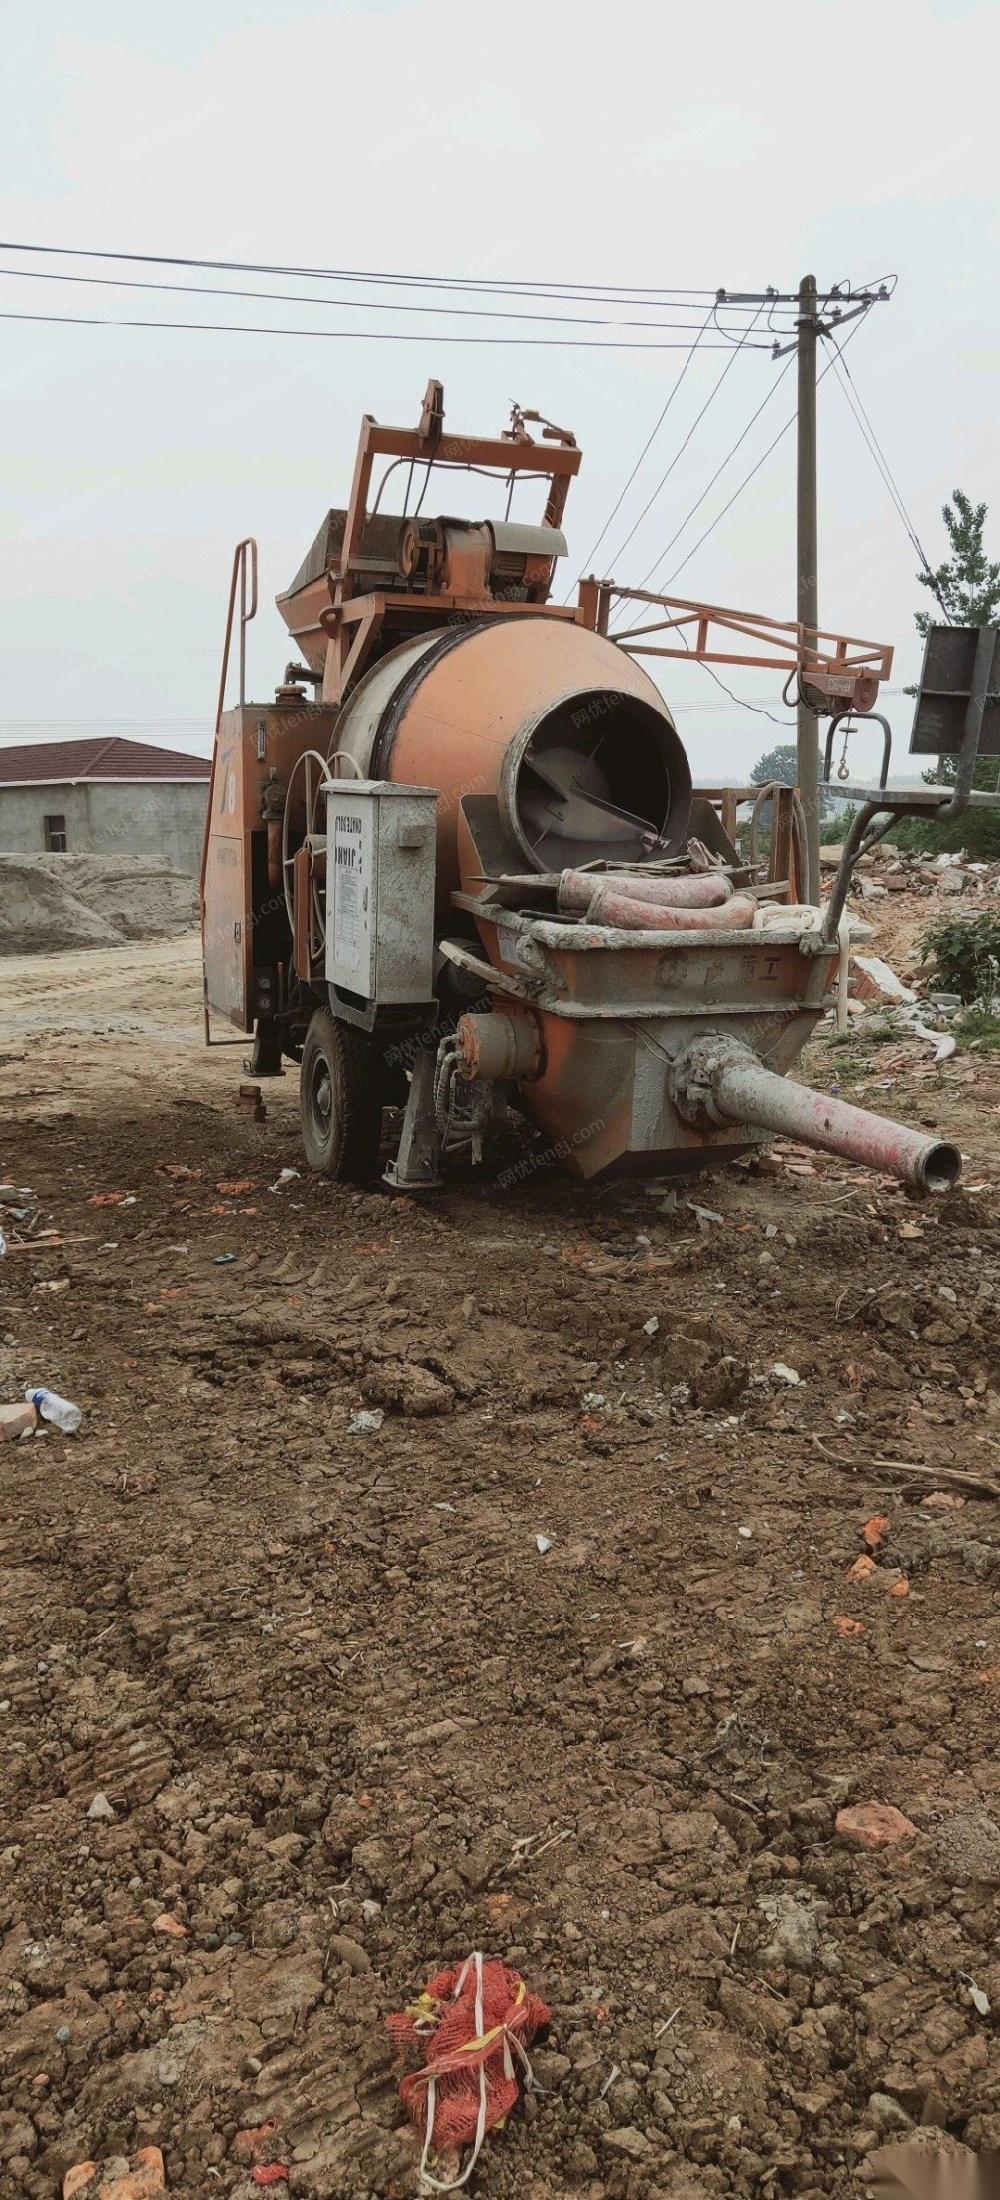 安徽合肥出售二手18年闲置搅拌拖泵一套 7万元 带泵管100米左右